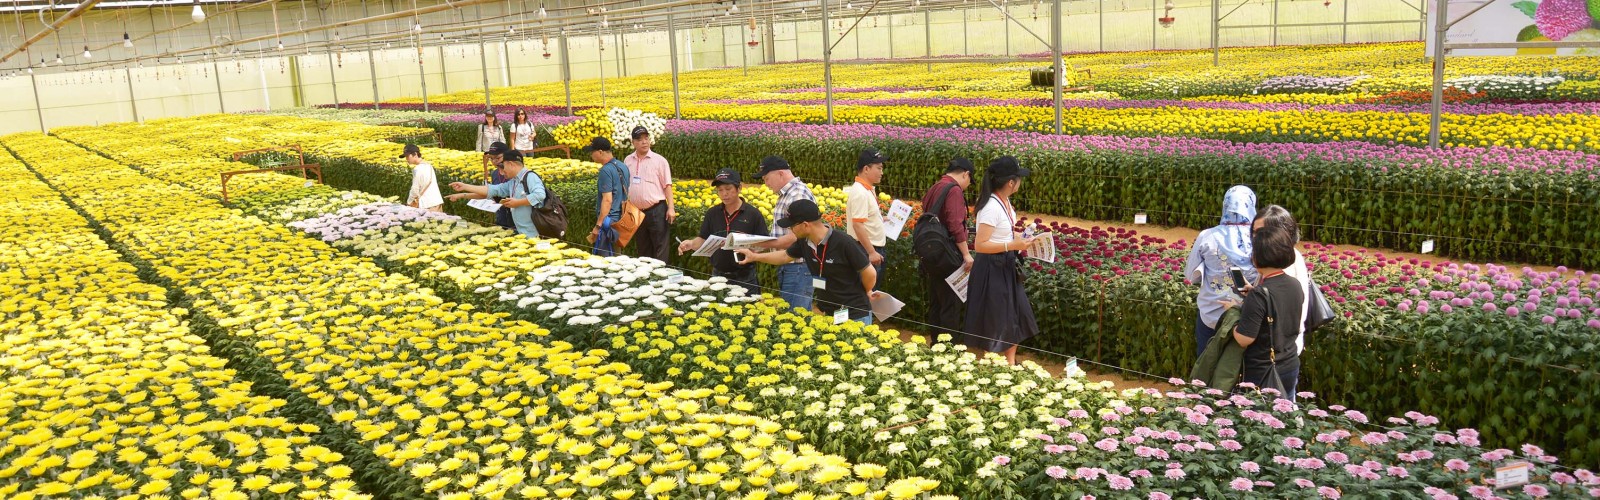 TCBC: Dalat Hasfarm giới thiệu hoa thử nghiệm 2018 – Chất lượng bền vững